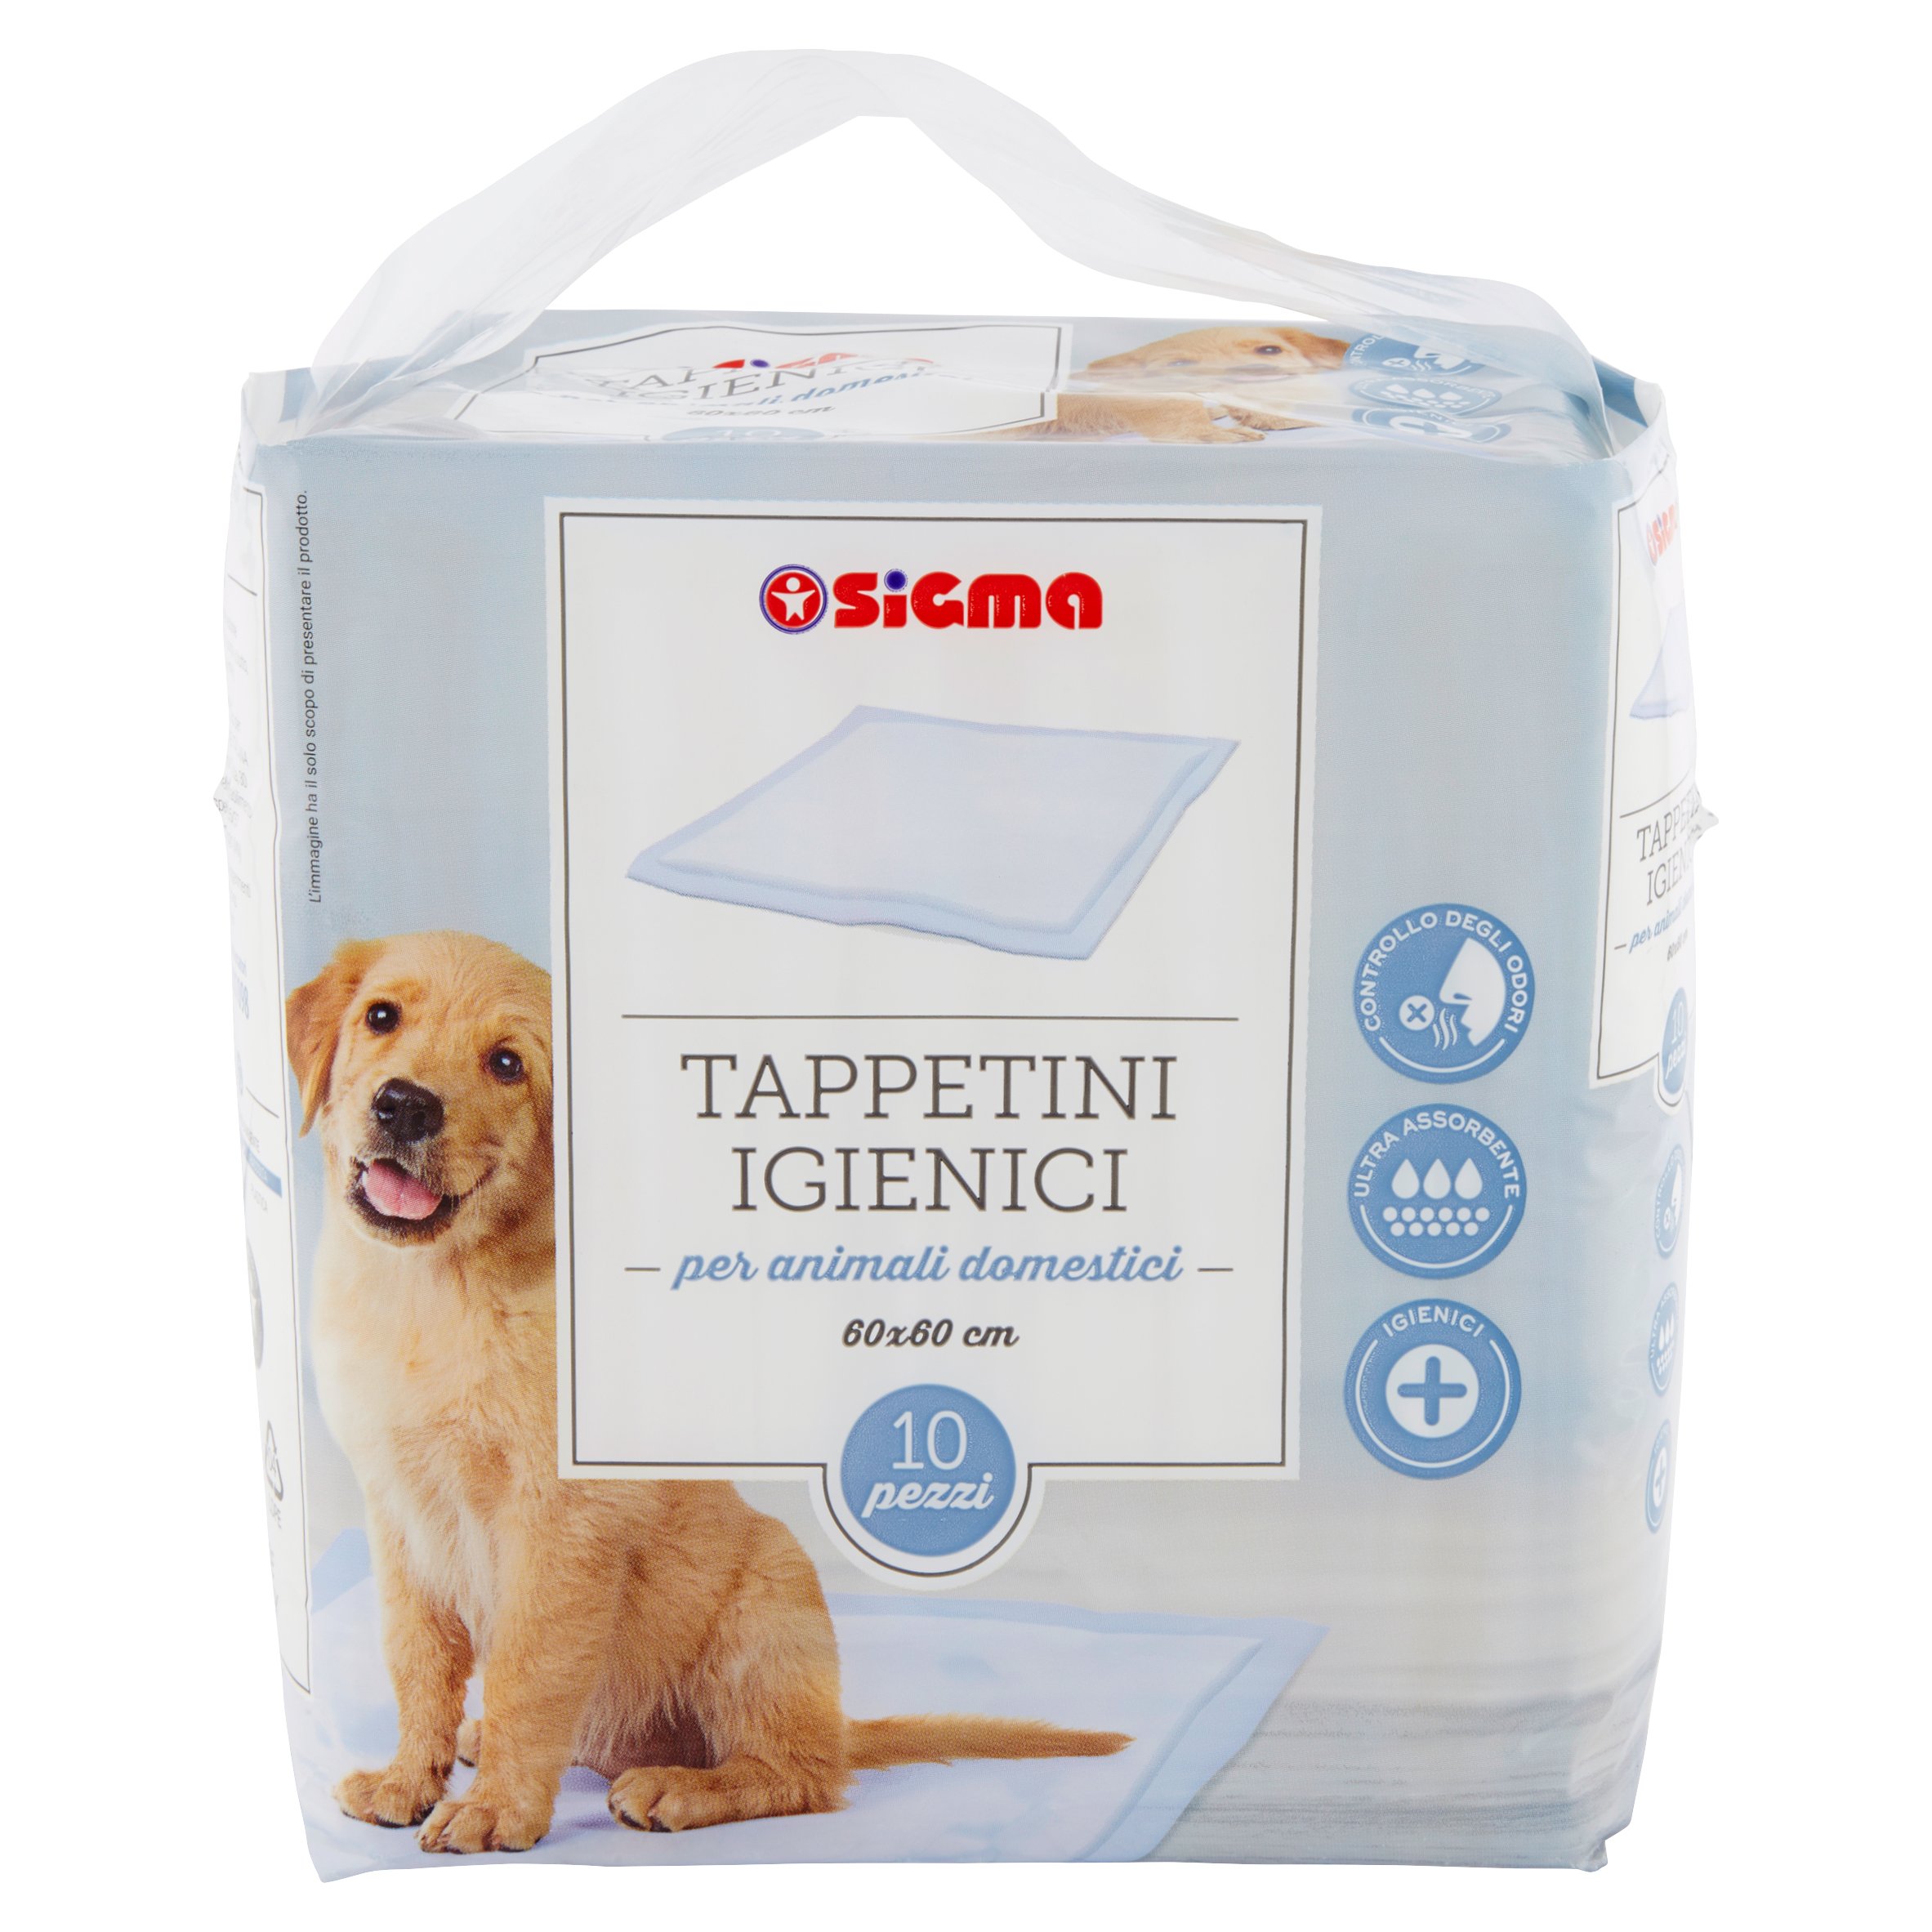 Sigma Tappetini Igienici per animali domestici 60x60 cm 10 pz - SuperSIGMA